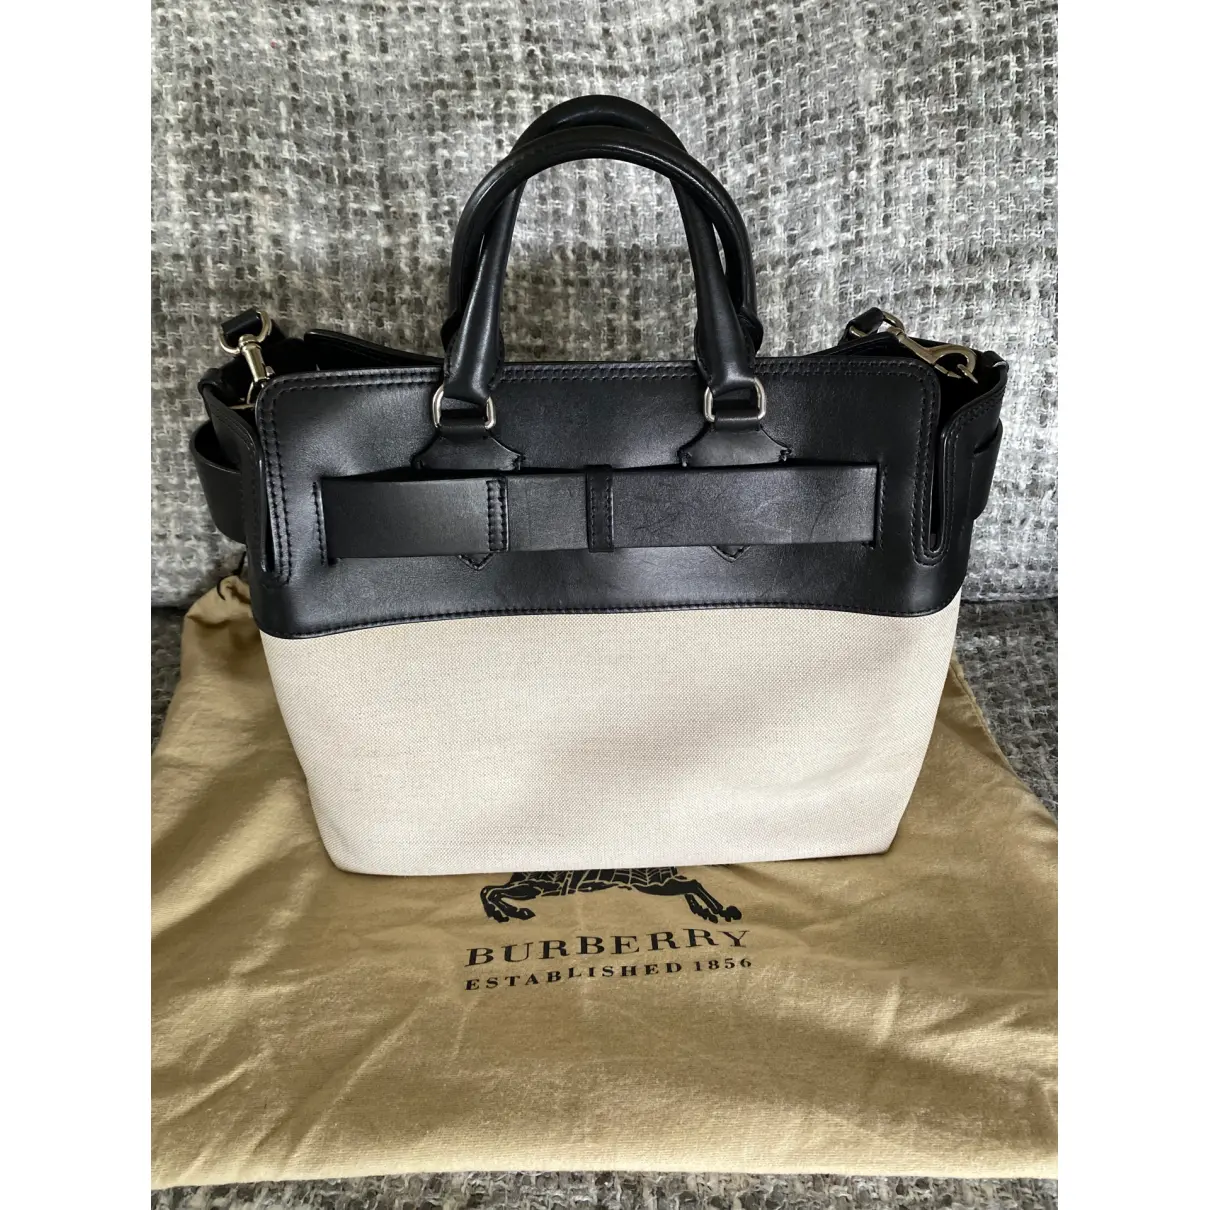 Buy Burberry The Belt handbag online